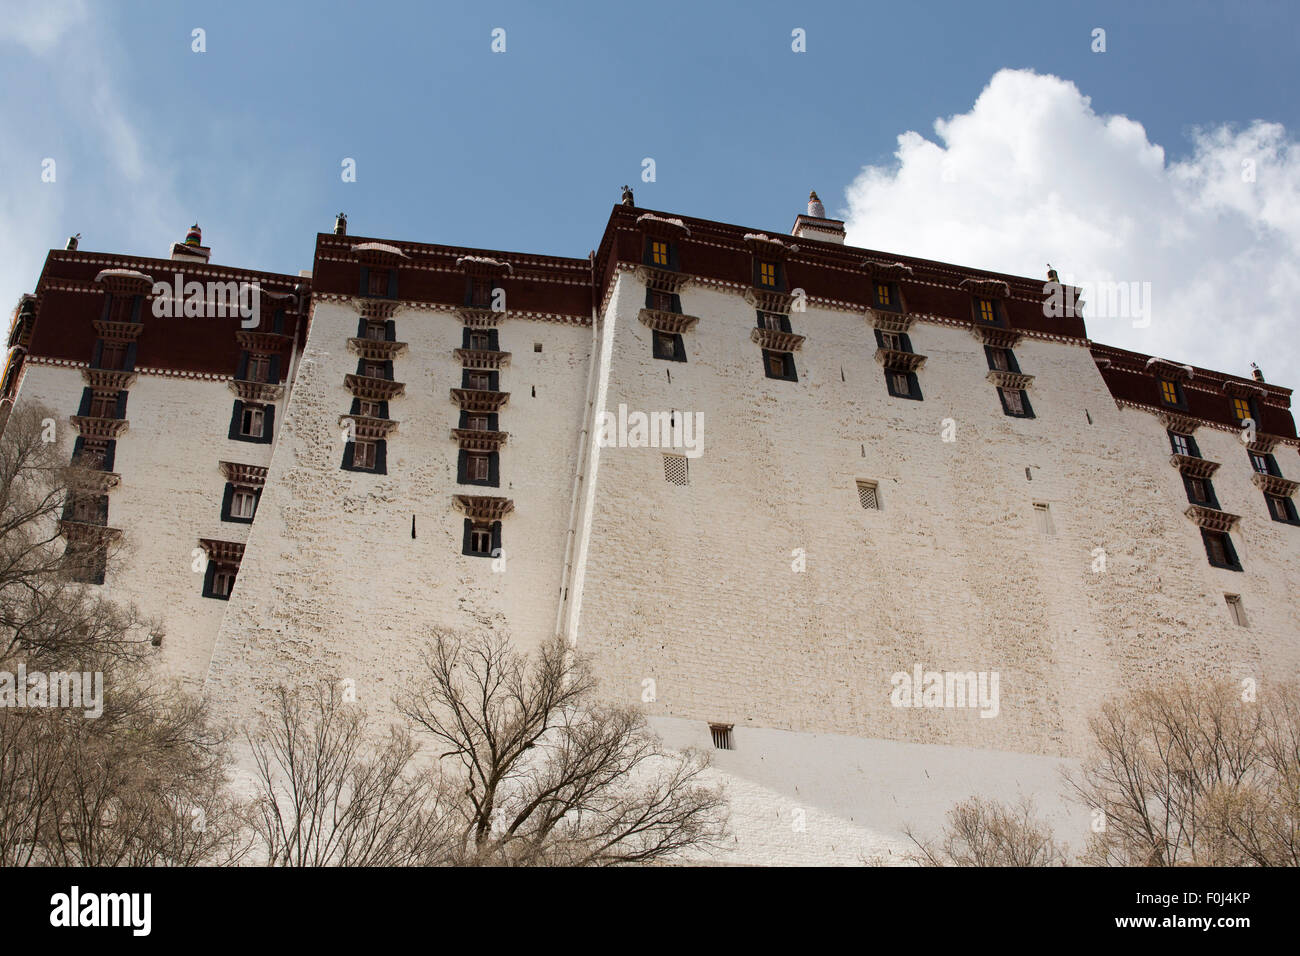 Retour du Palais du Potala à Lhassa. Maison historique du dalaï-lama. Site du patrimoine mondial de l'UNESCO. Chine 2013 Banque D'Images